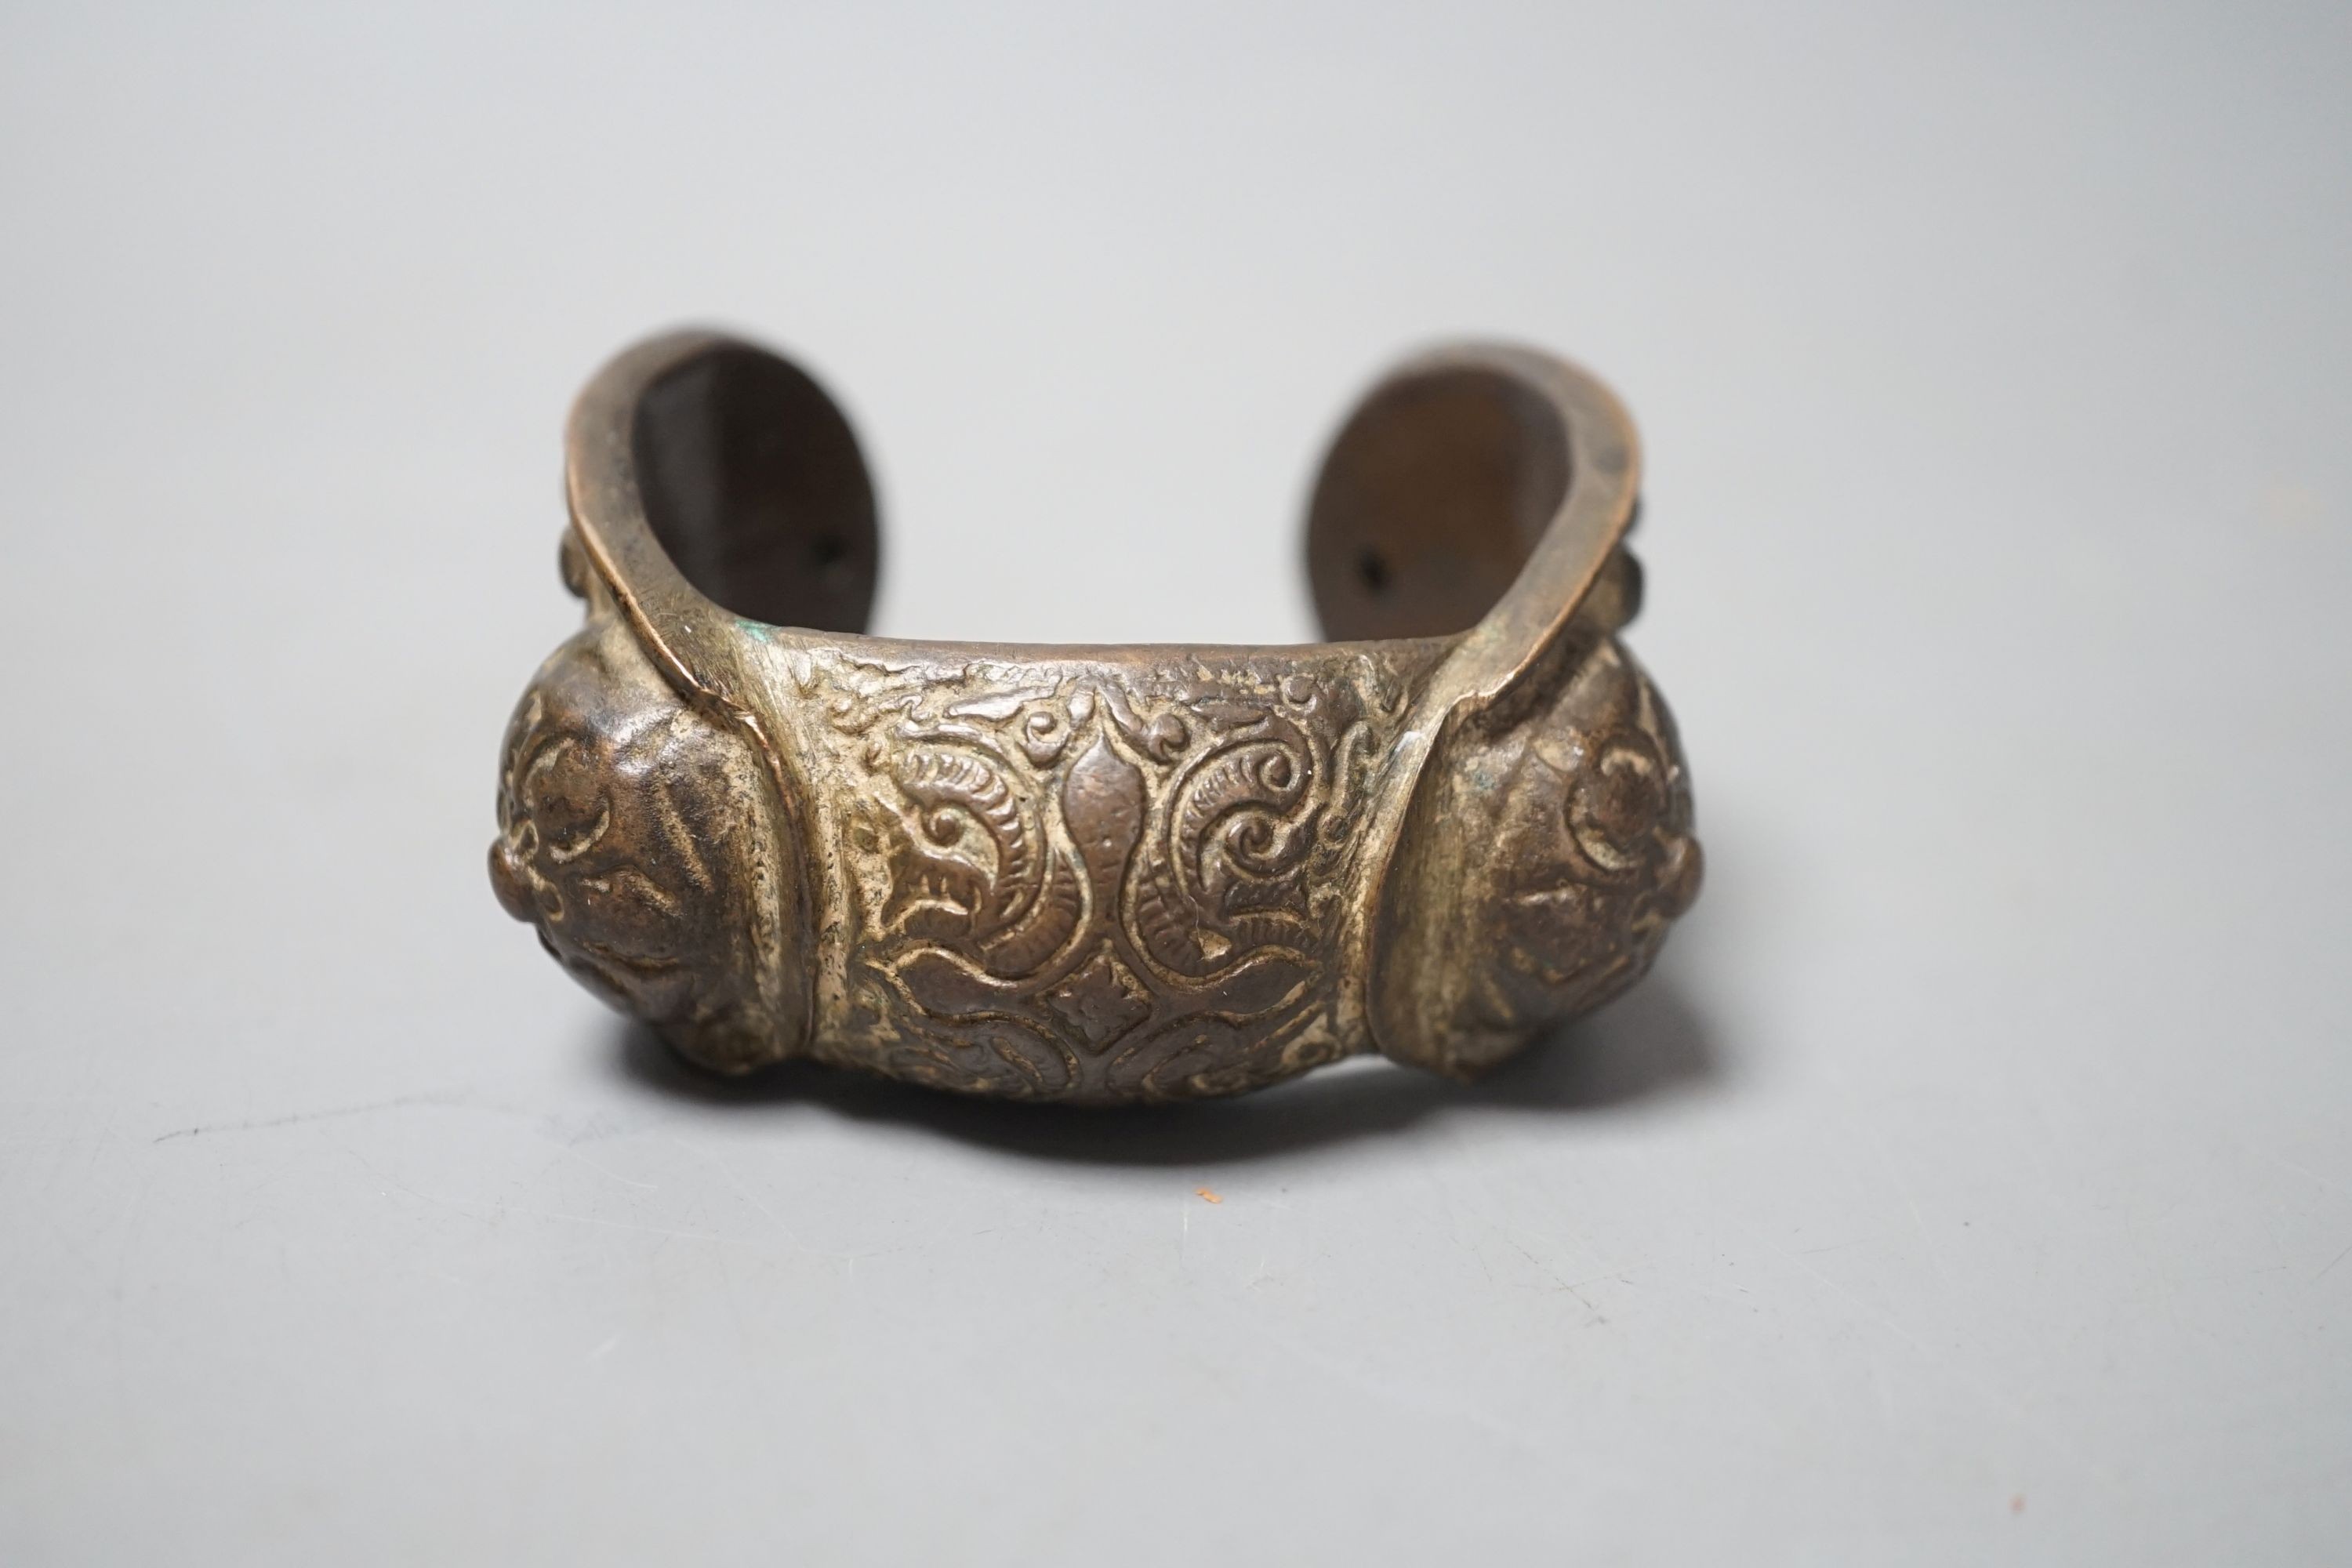 A Chinese brass bangle